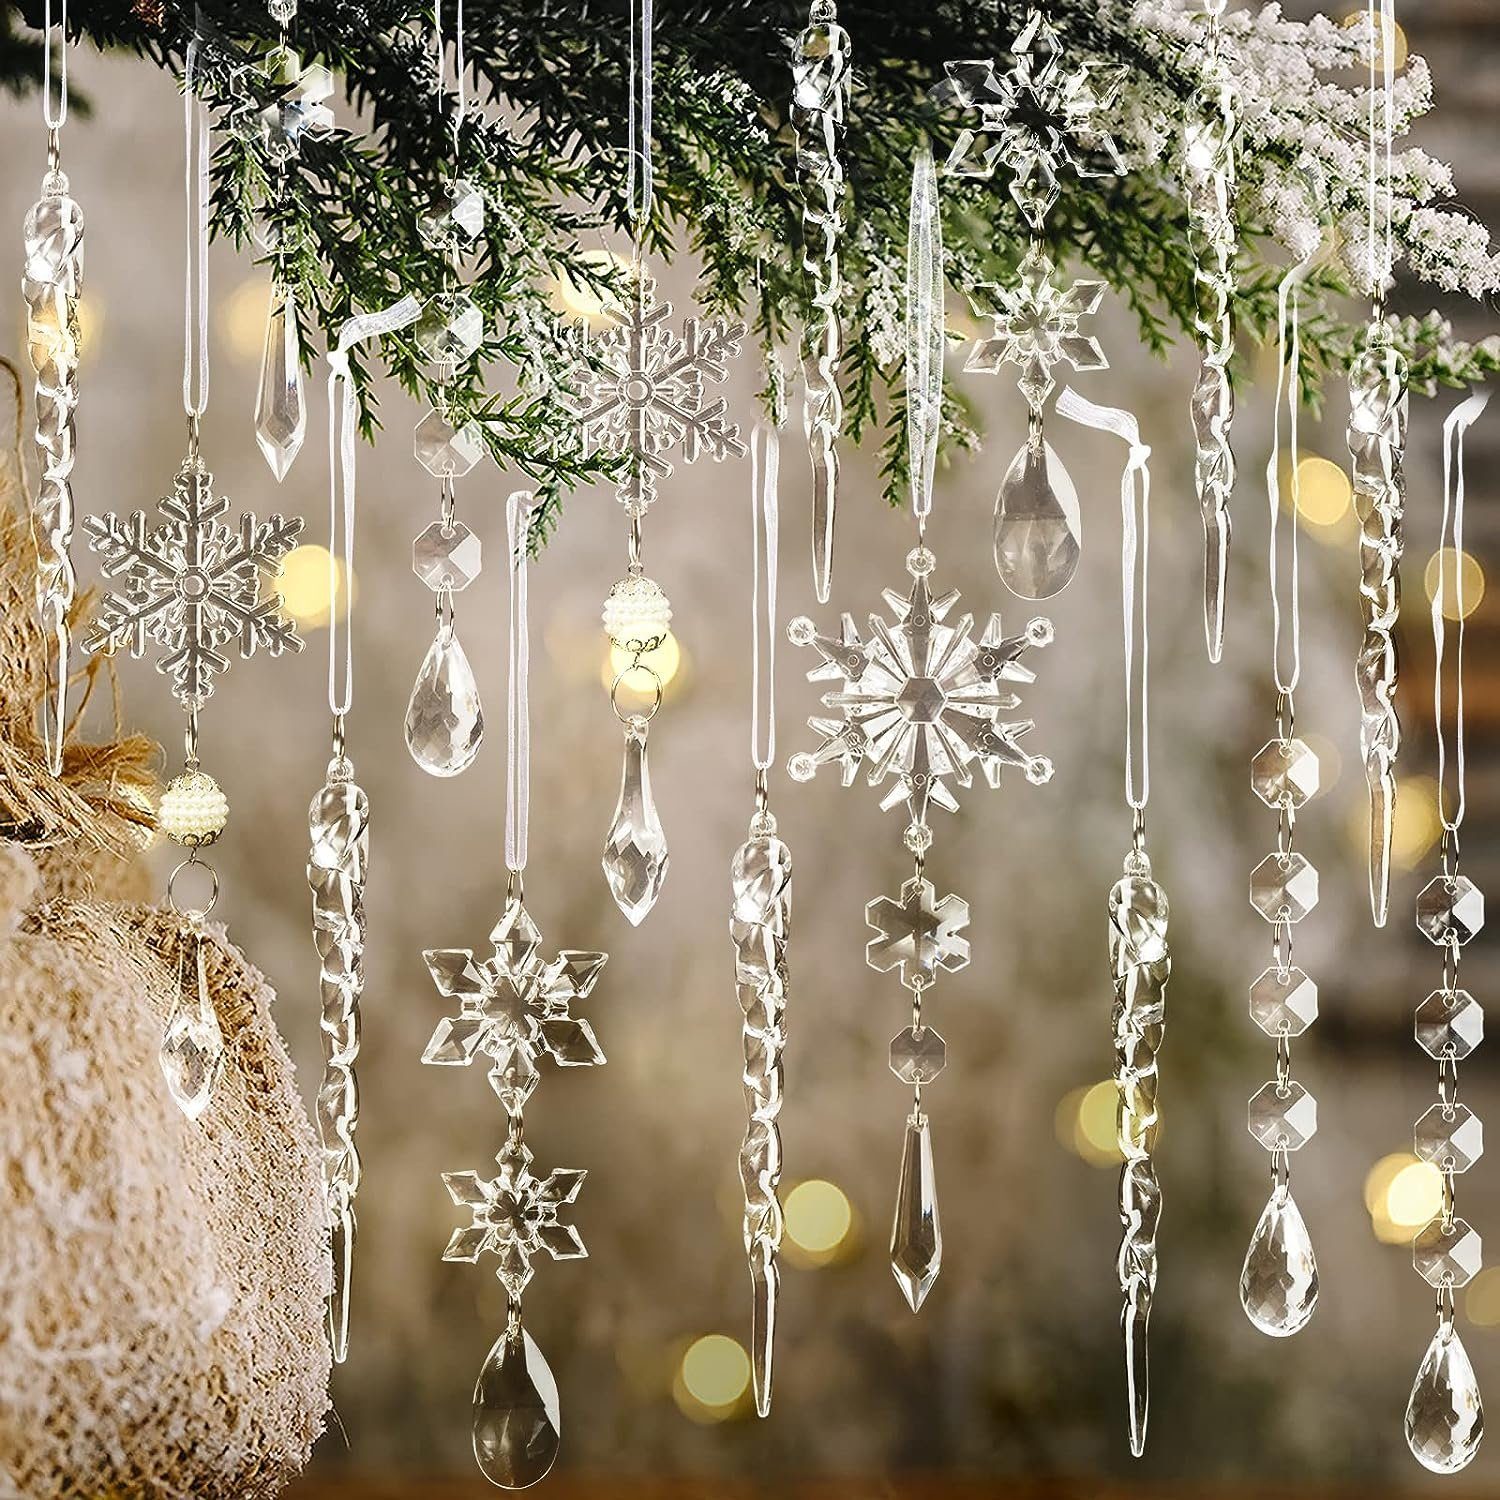 Lamon Christbaumschmuck 10 Stück Weihnachtsbaumschmuck Kristallornamente, hängende Weihnachtsschneeflocken Eiszapfen Tropfen transparent